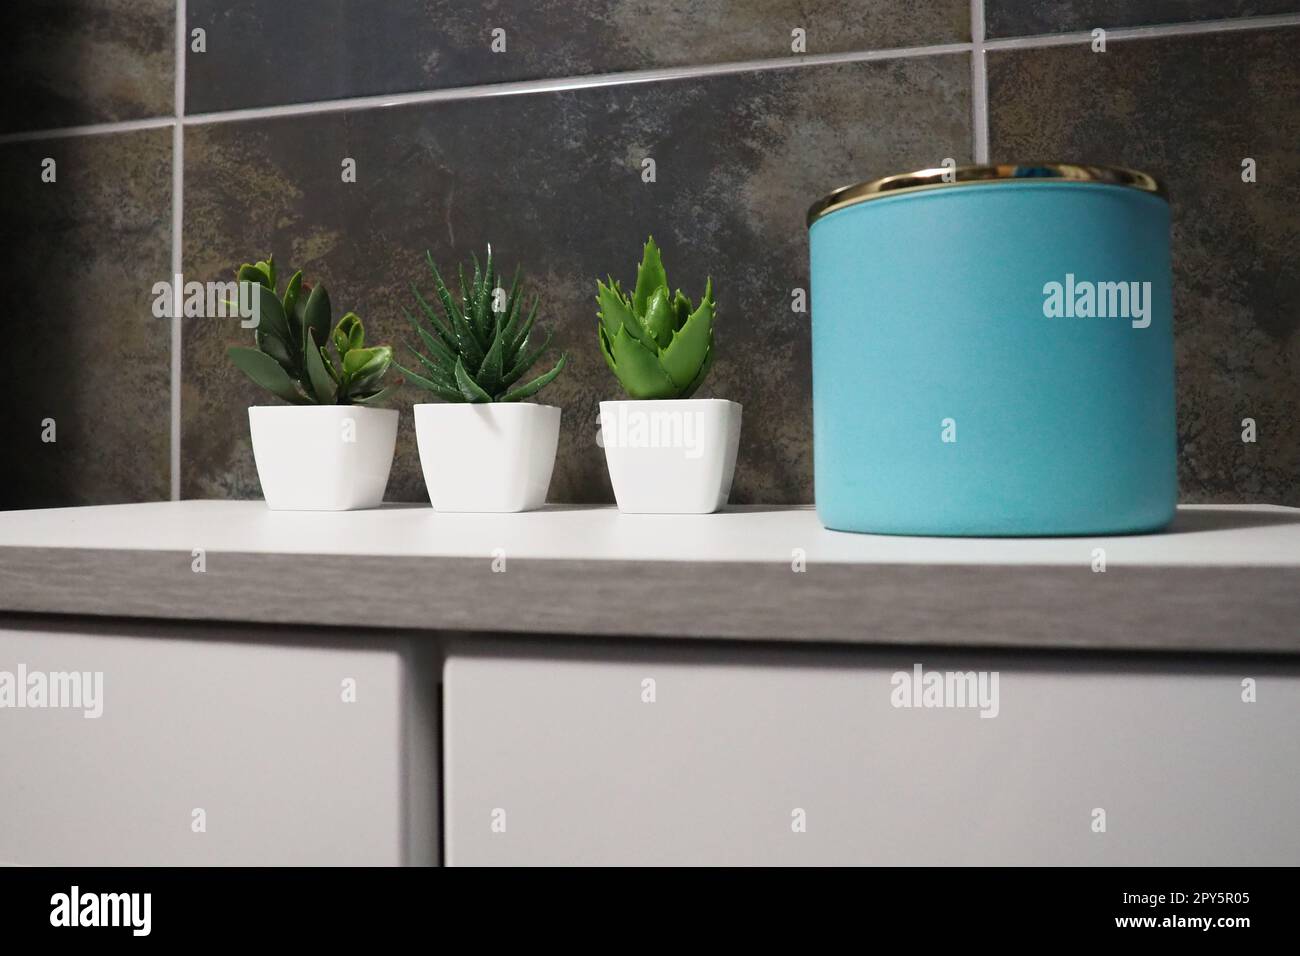 Dekorelemente im Badezimmer. Ein blaues Glas mit Sahne oder Öl, grüne künstliche Pflanzen in kleinen weißen Töpfen stehen auf einem Regal des Schranks. Schwarze Wandfliesen. Bad und WC-Innenausstattung Stockfoto